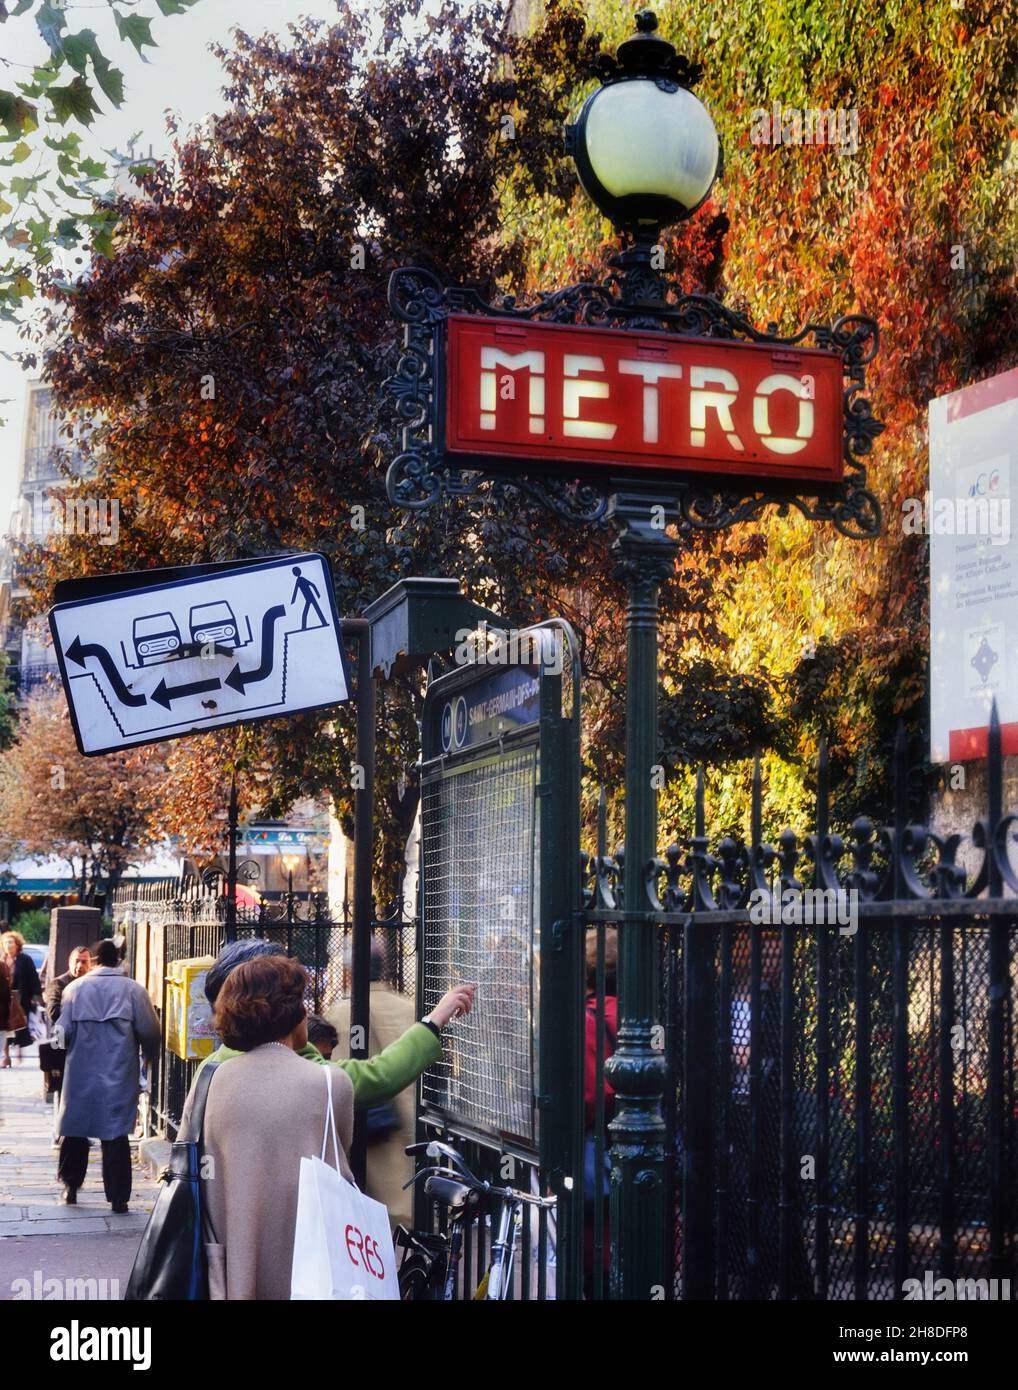 Personas que comprueban el mapa del metro fuera de la entrada a la estación Saint-Germain-des-Prés, París, Francia. Foto de stock